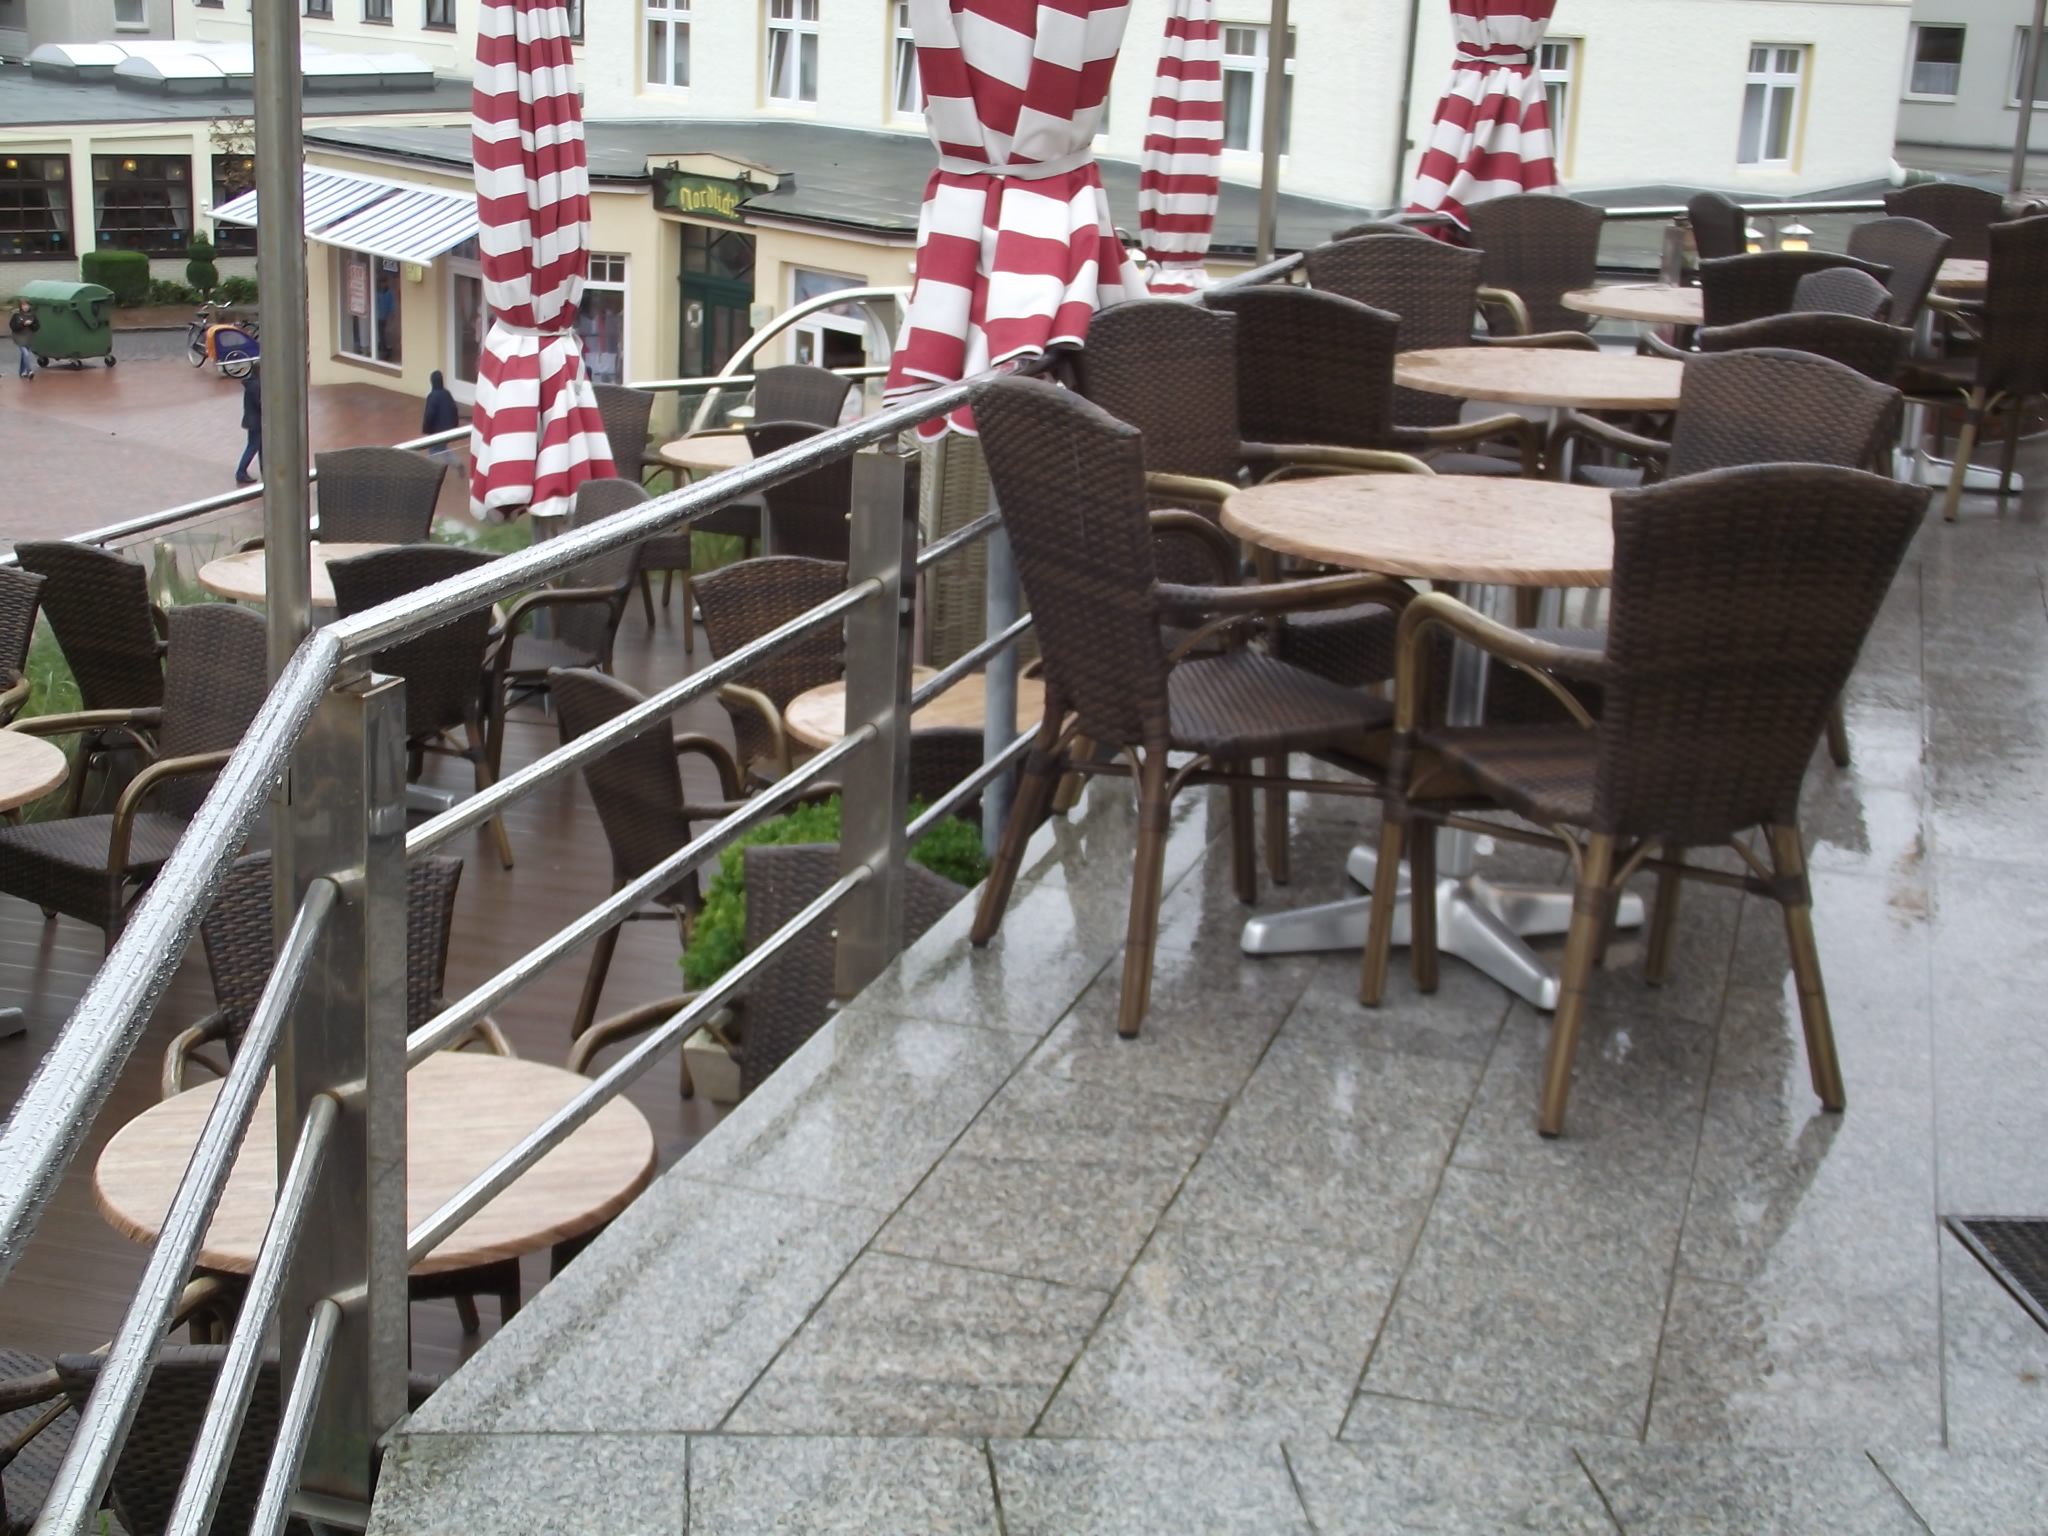 Café Pudding auf Wangerooge - Terasse im Regen